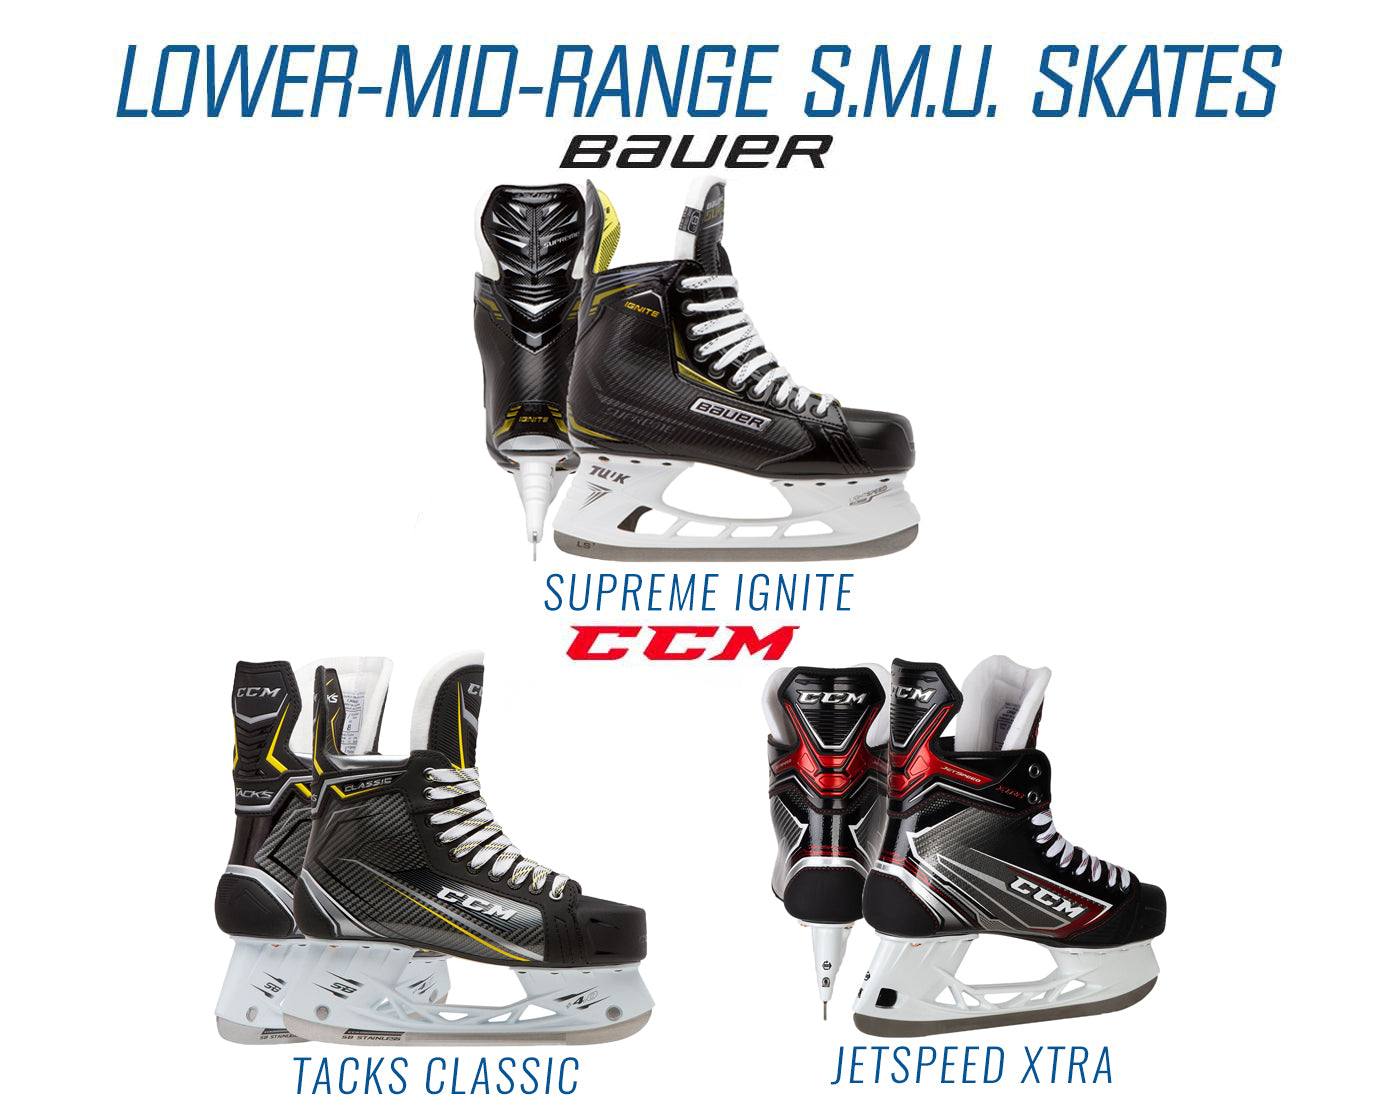 Lower-Mid-Range S.M.U. Skates